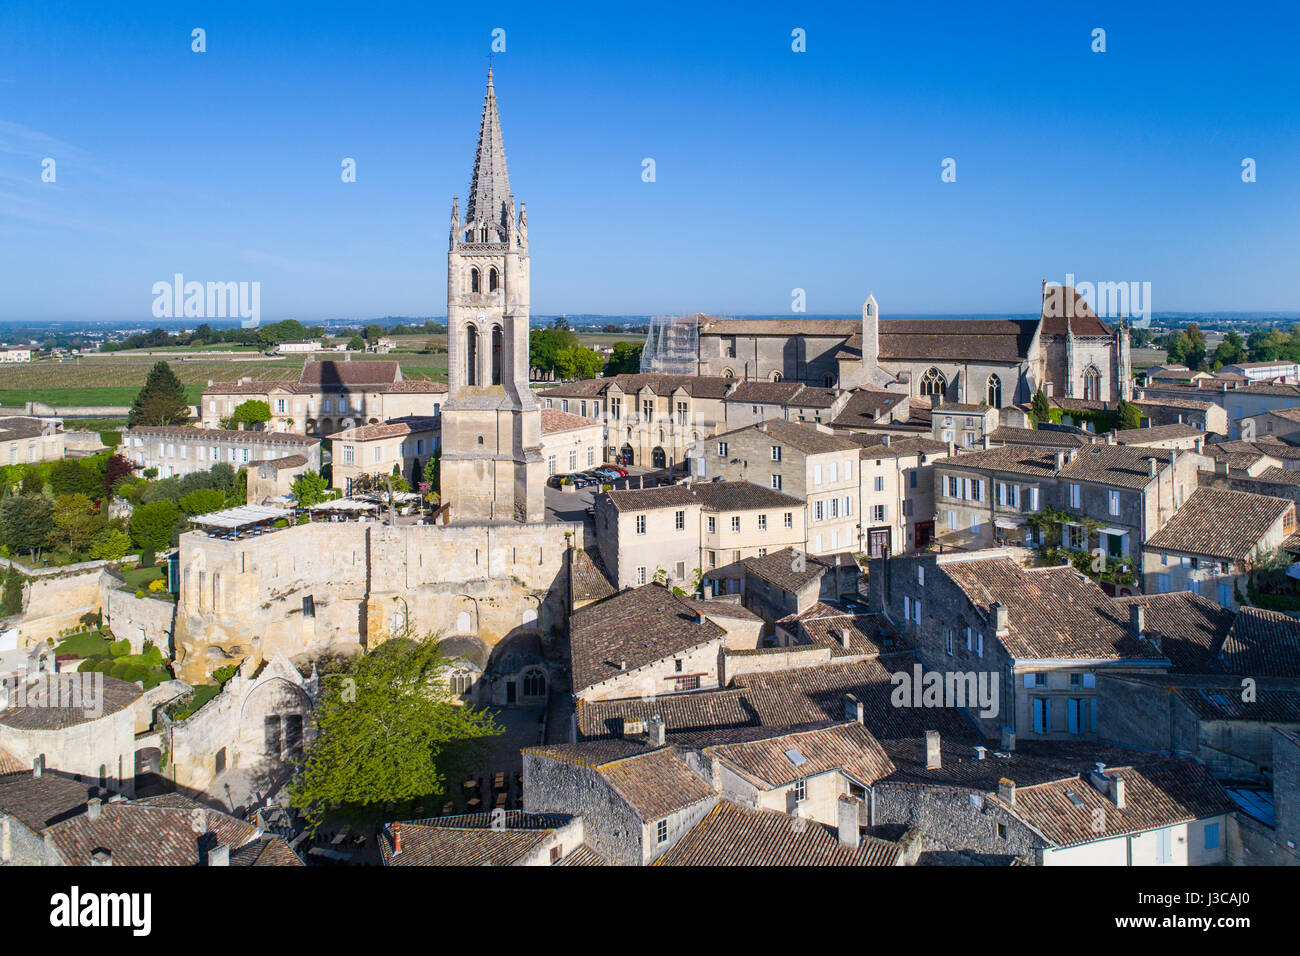 Vue aérienne de Saint-Emilion, l'une des principales zones de production de vin rouge de la région de Bordeaux. Banque D'Images